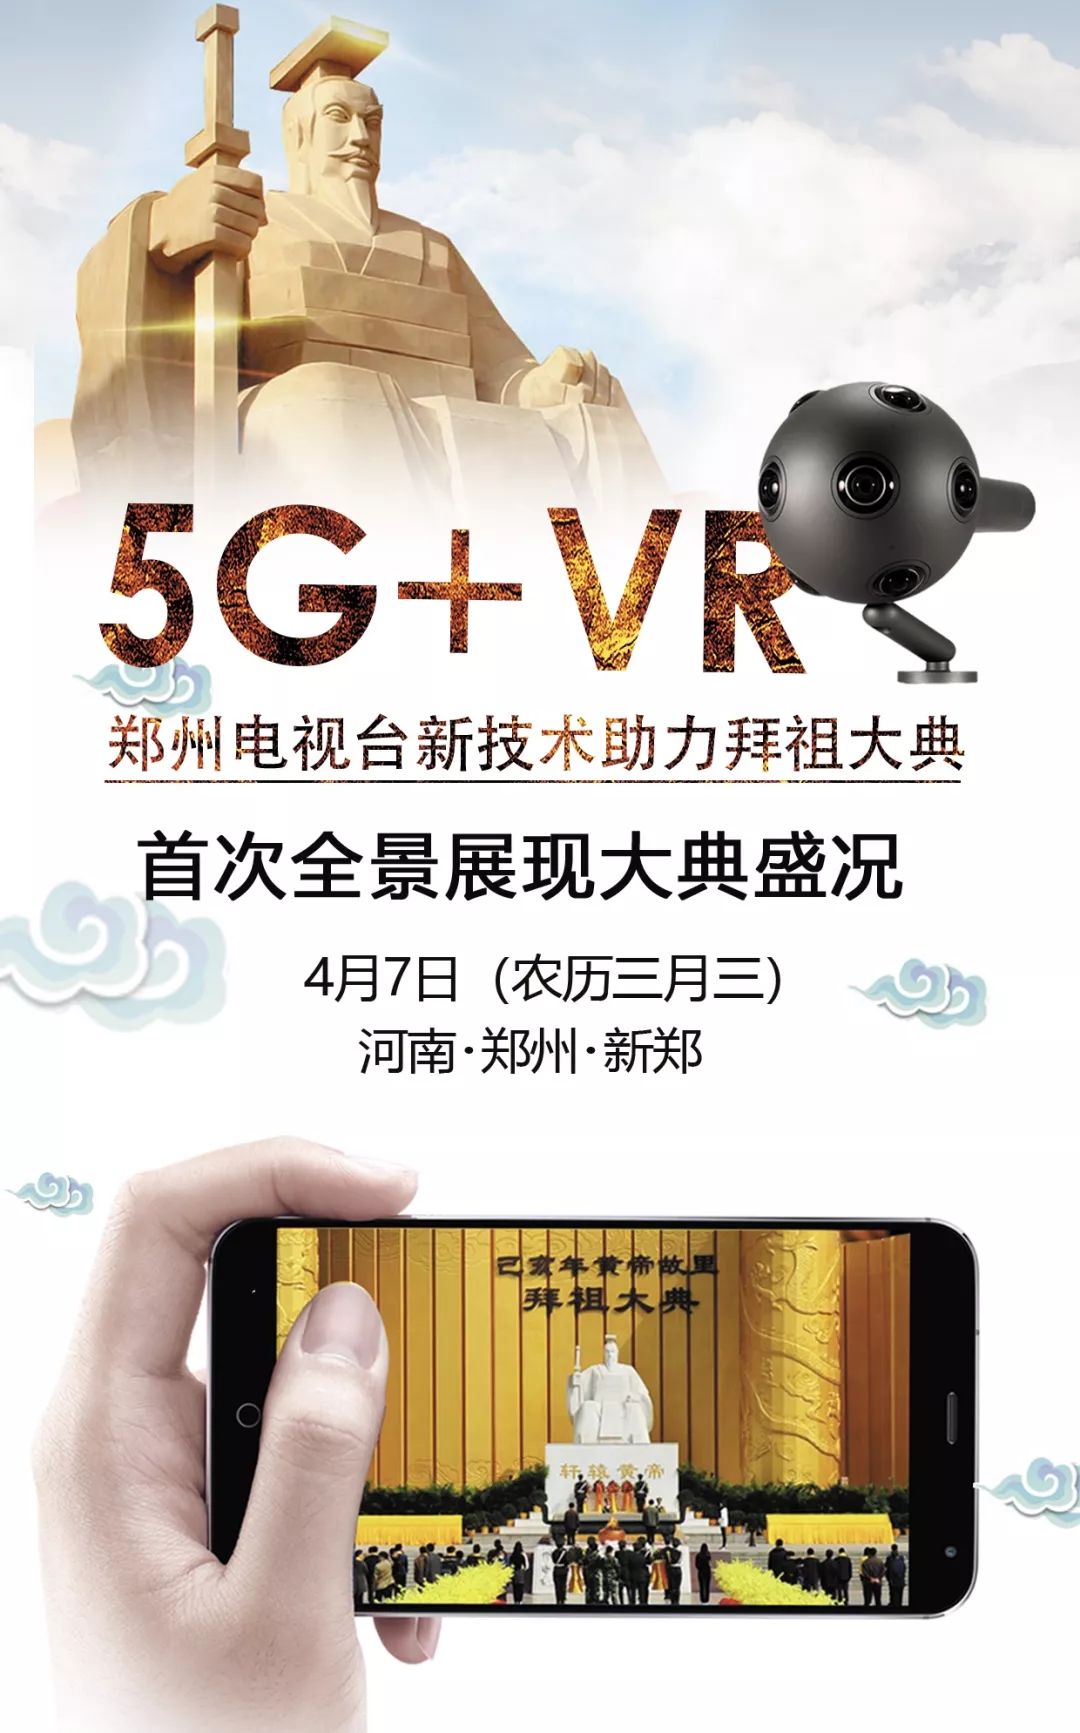 嘗鮮！鄭州電視台初度利用5G+VR技能 360度全景體驗 讓您身臨其境感應傳染拜祖大大典盛況 科技 第1張